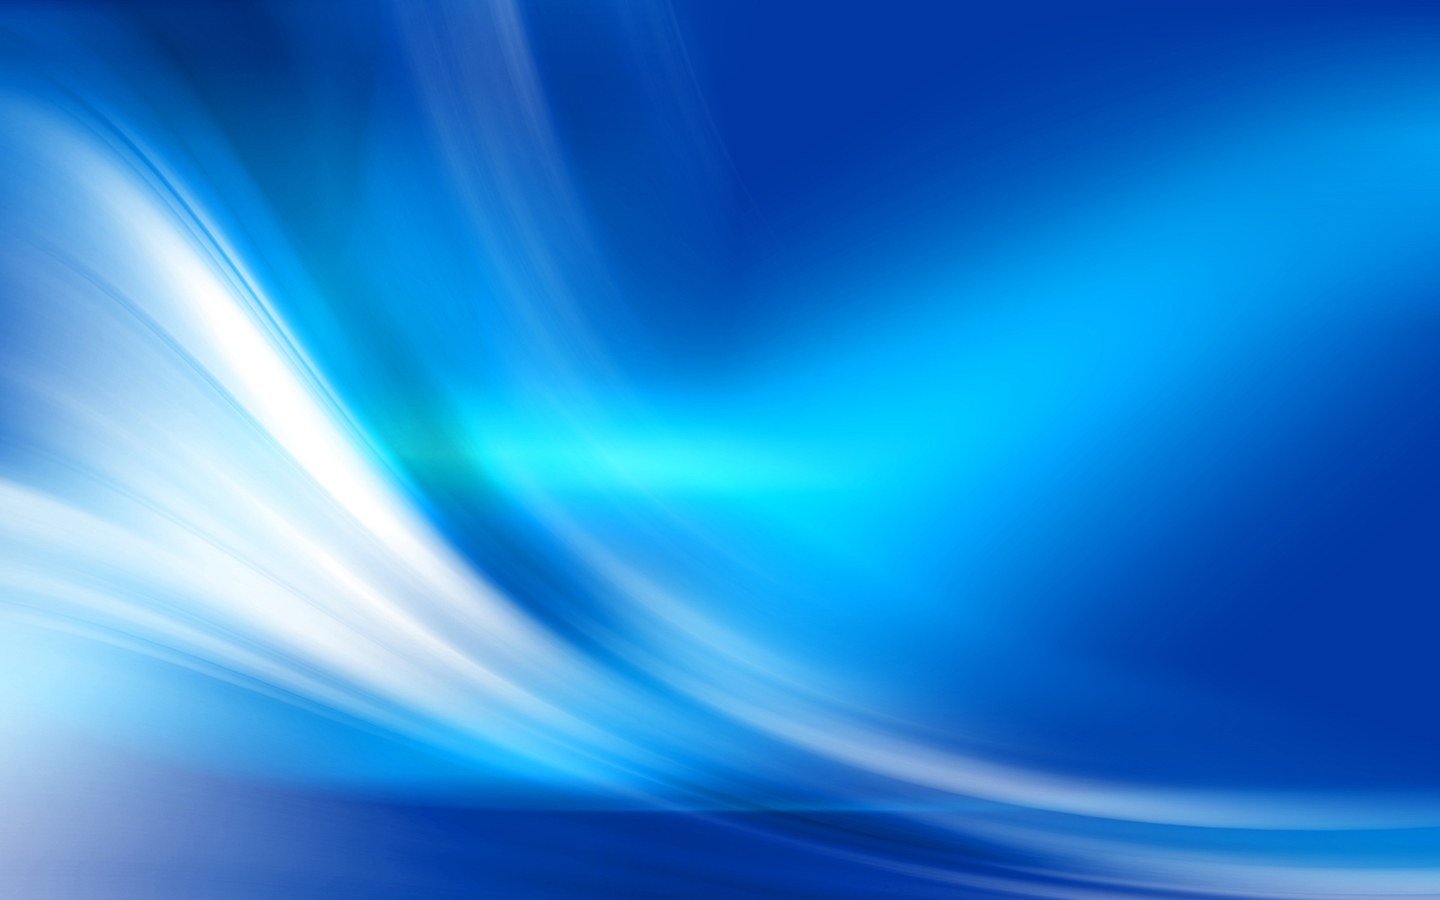 Blue Abstract Light Effect 1440900 Wallpaper Wide Screen Wallpaper